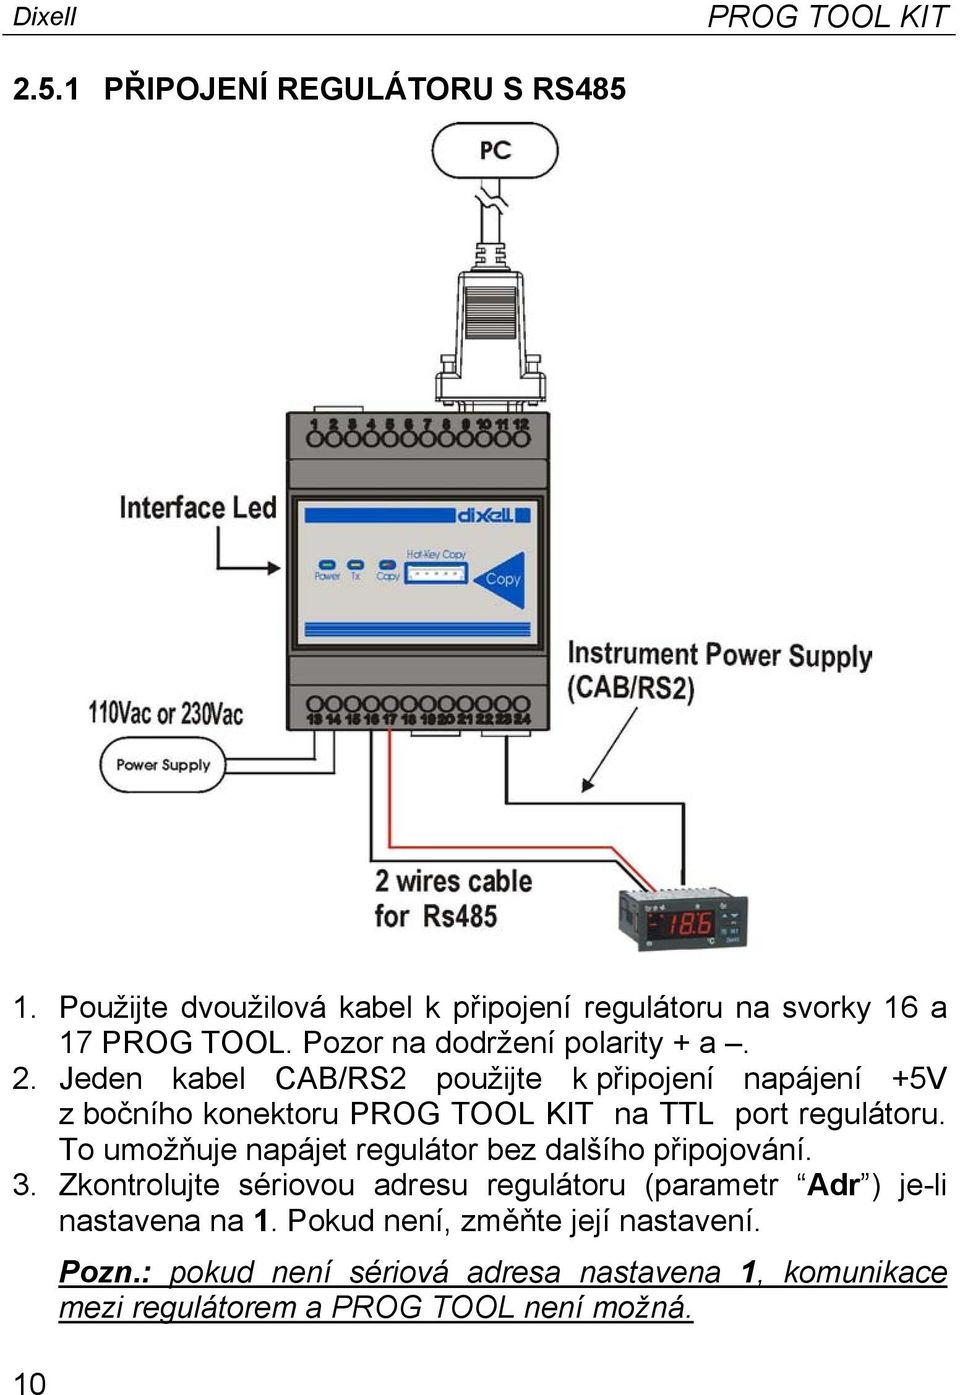 Jeden kabel CAB/RS2 použijte k připojení napájení +5V z bočního konektoru PROG TOOL KIT na TTL port regulátoru.